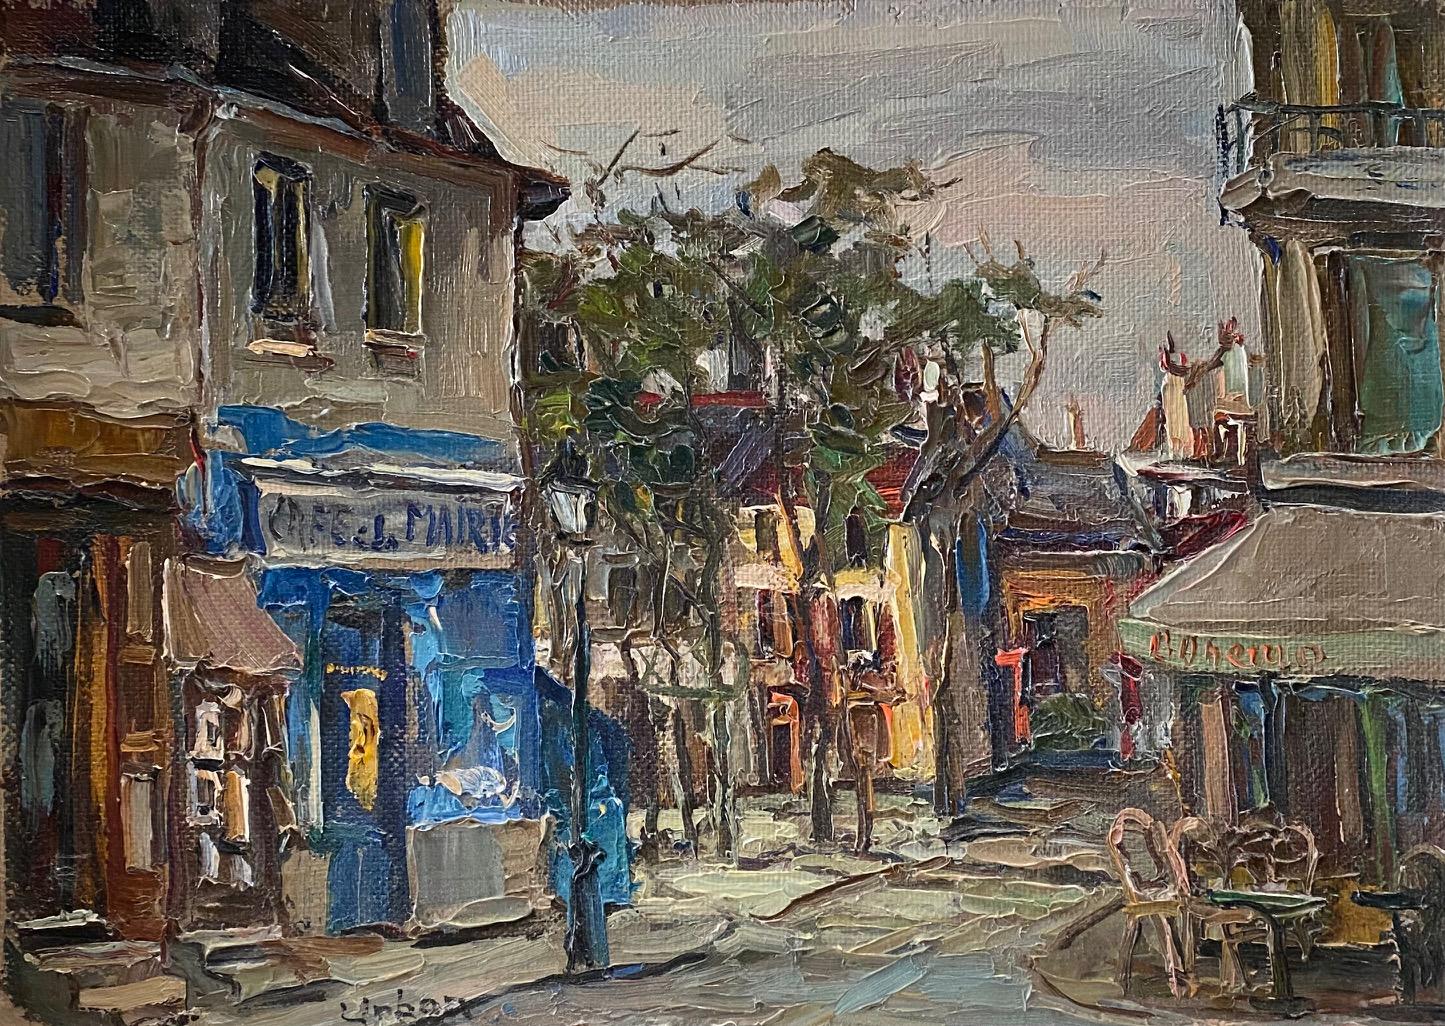 "Place du Tertre Paris" by Harry Urban - Oil on wood 49x36 cm